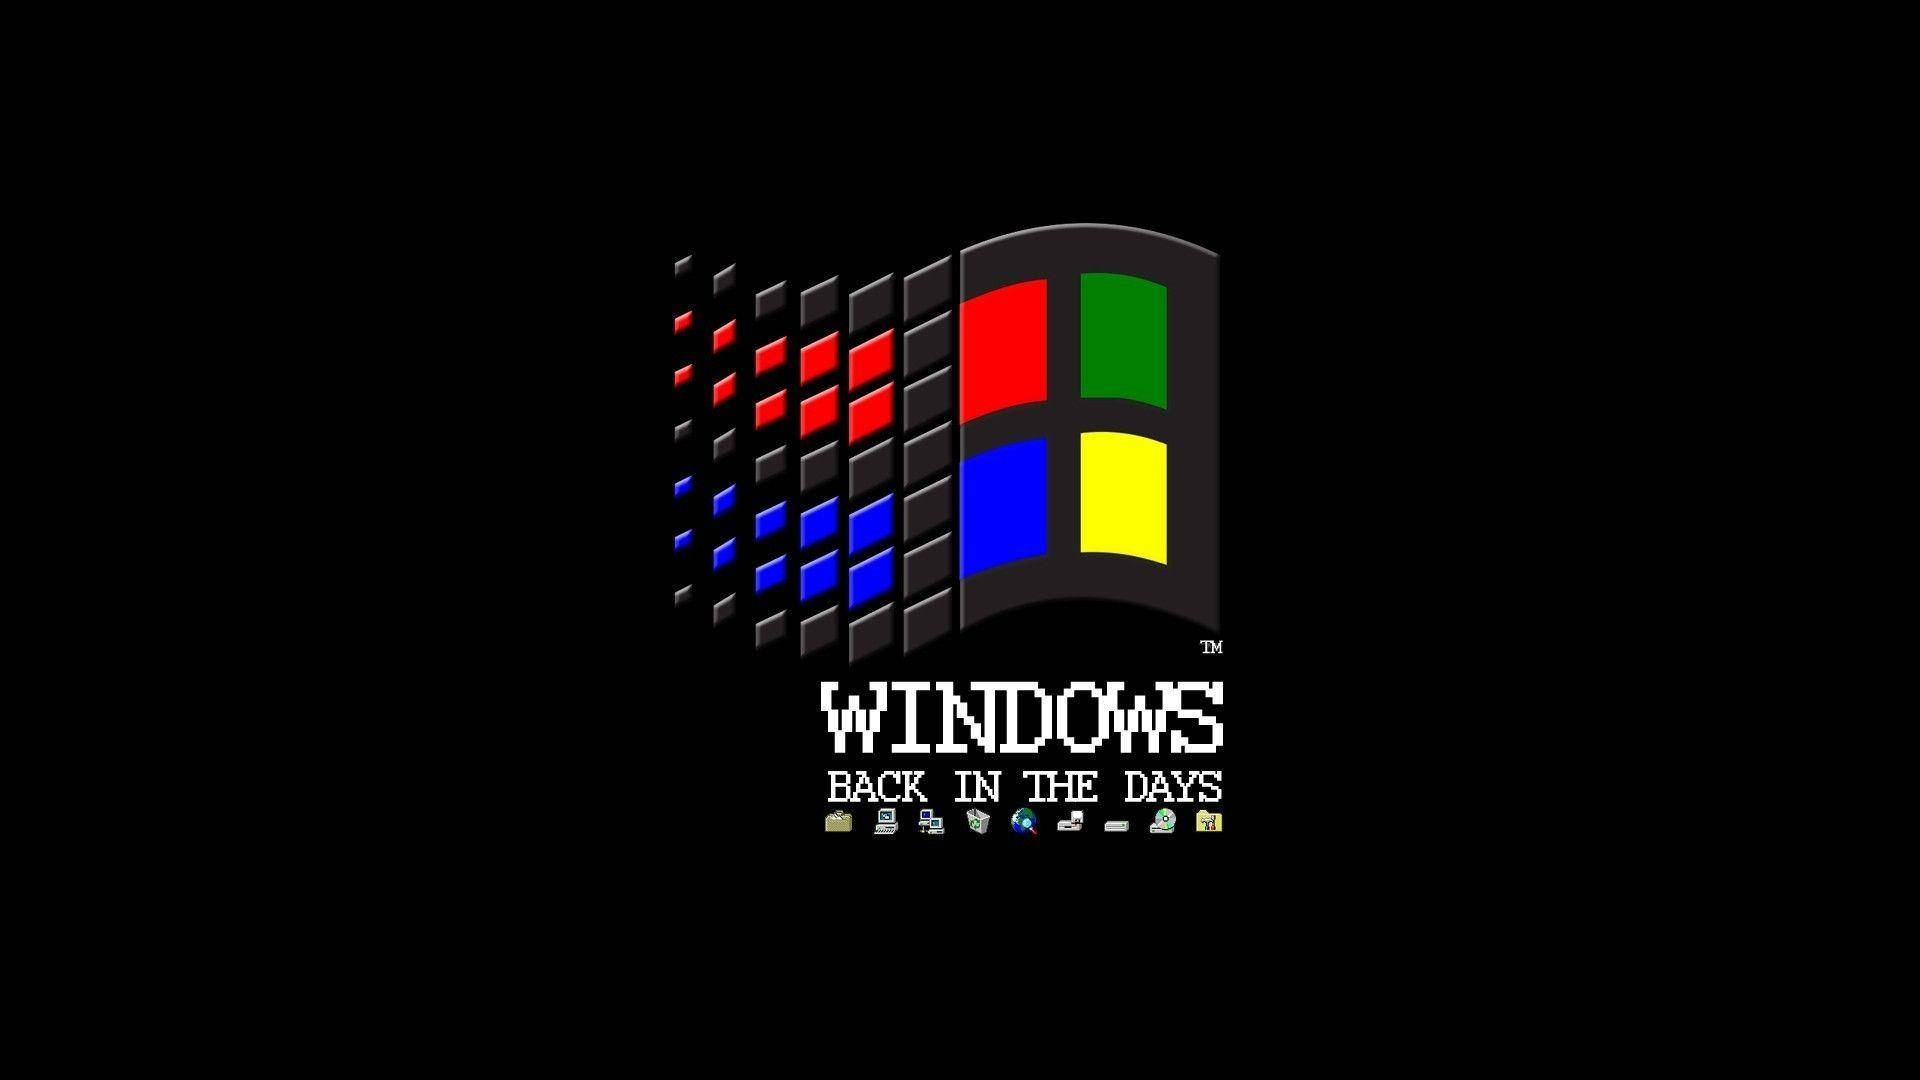 Iconischesbetriebssystem: Windows 98 Wallpaper